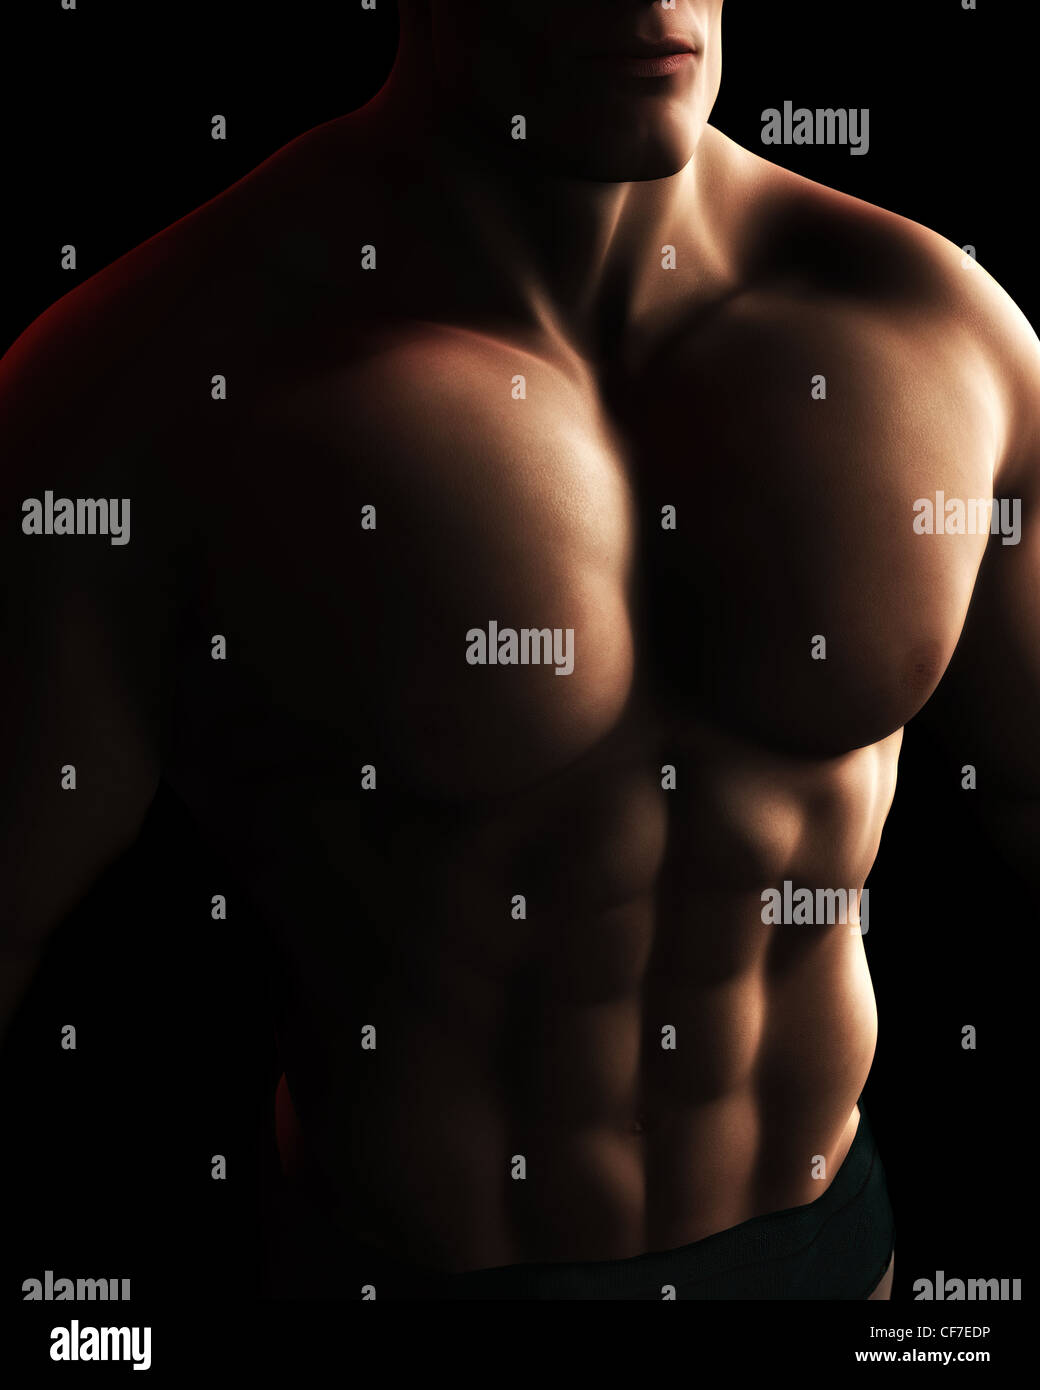 Eine digitale Illustration von einem männlichen Bodybuilder Torso im dynamischen Licht und Schatten. Stockfoto